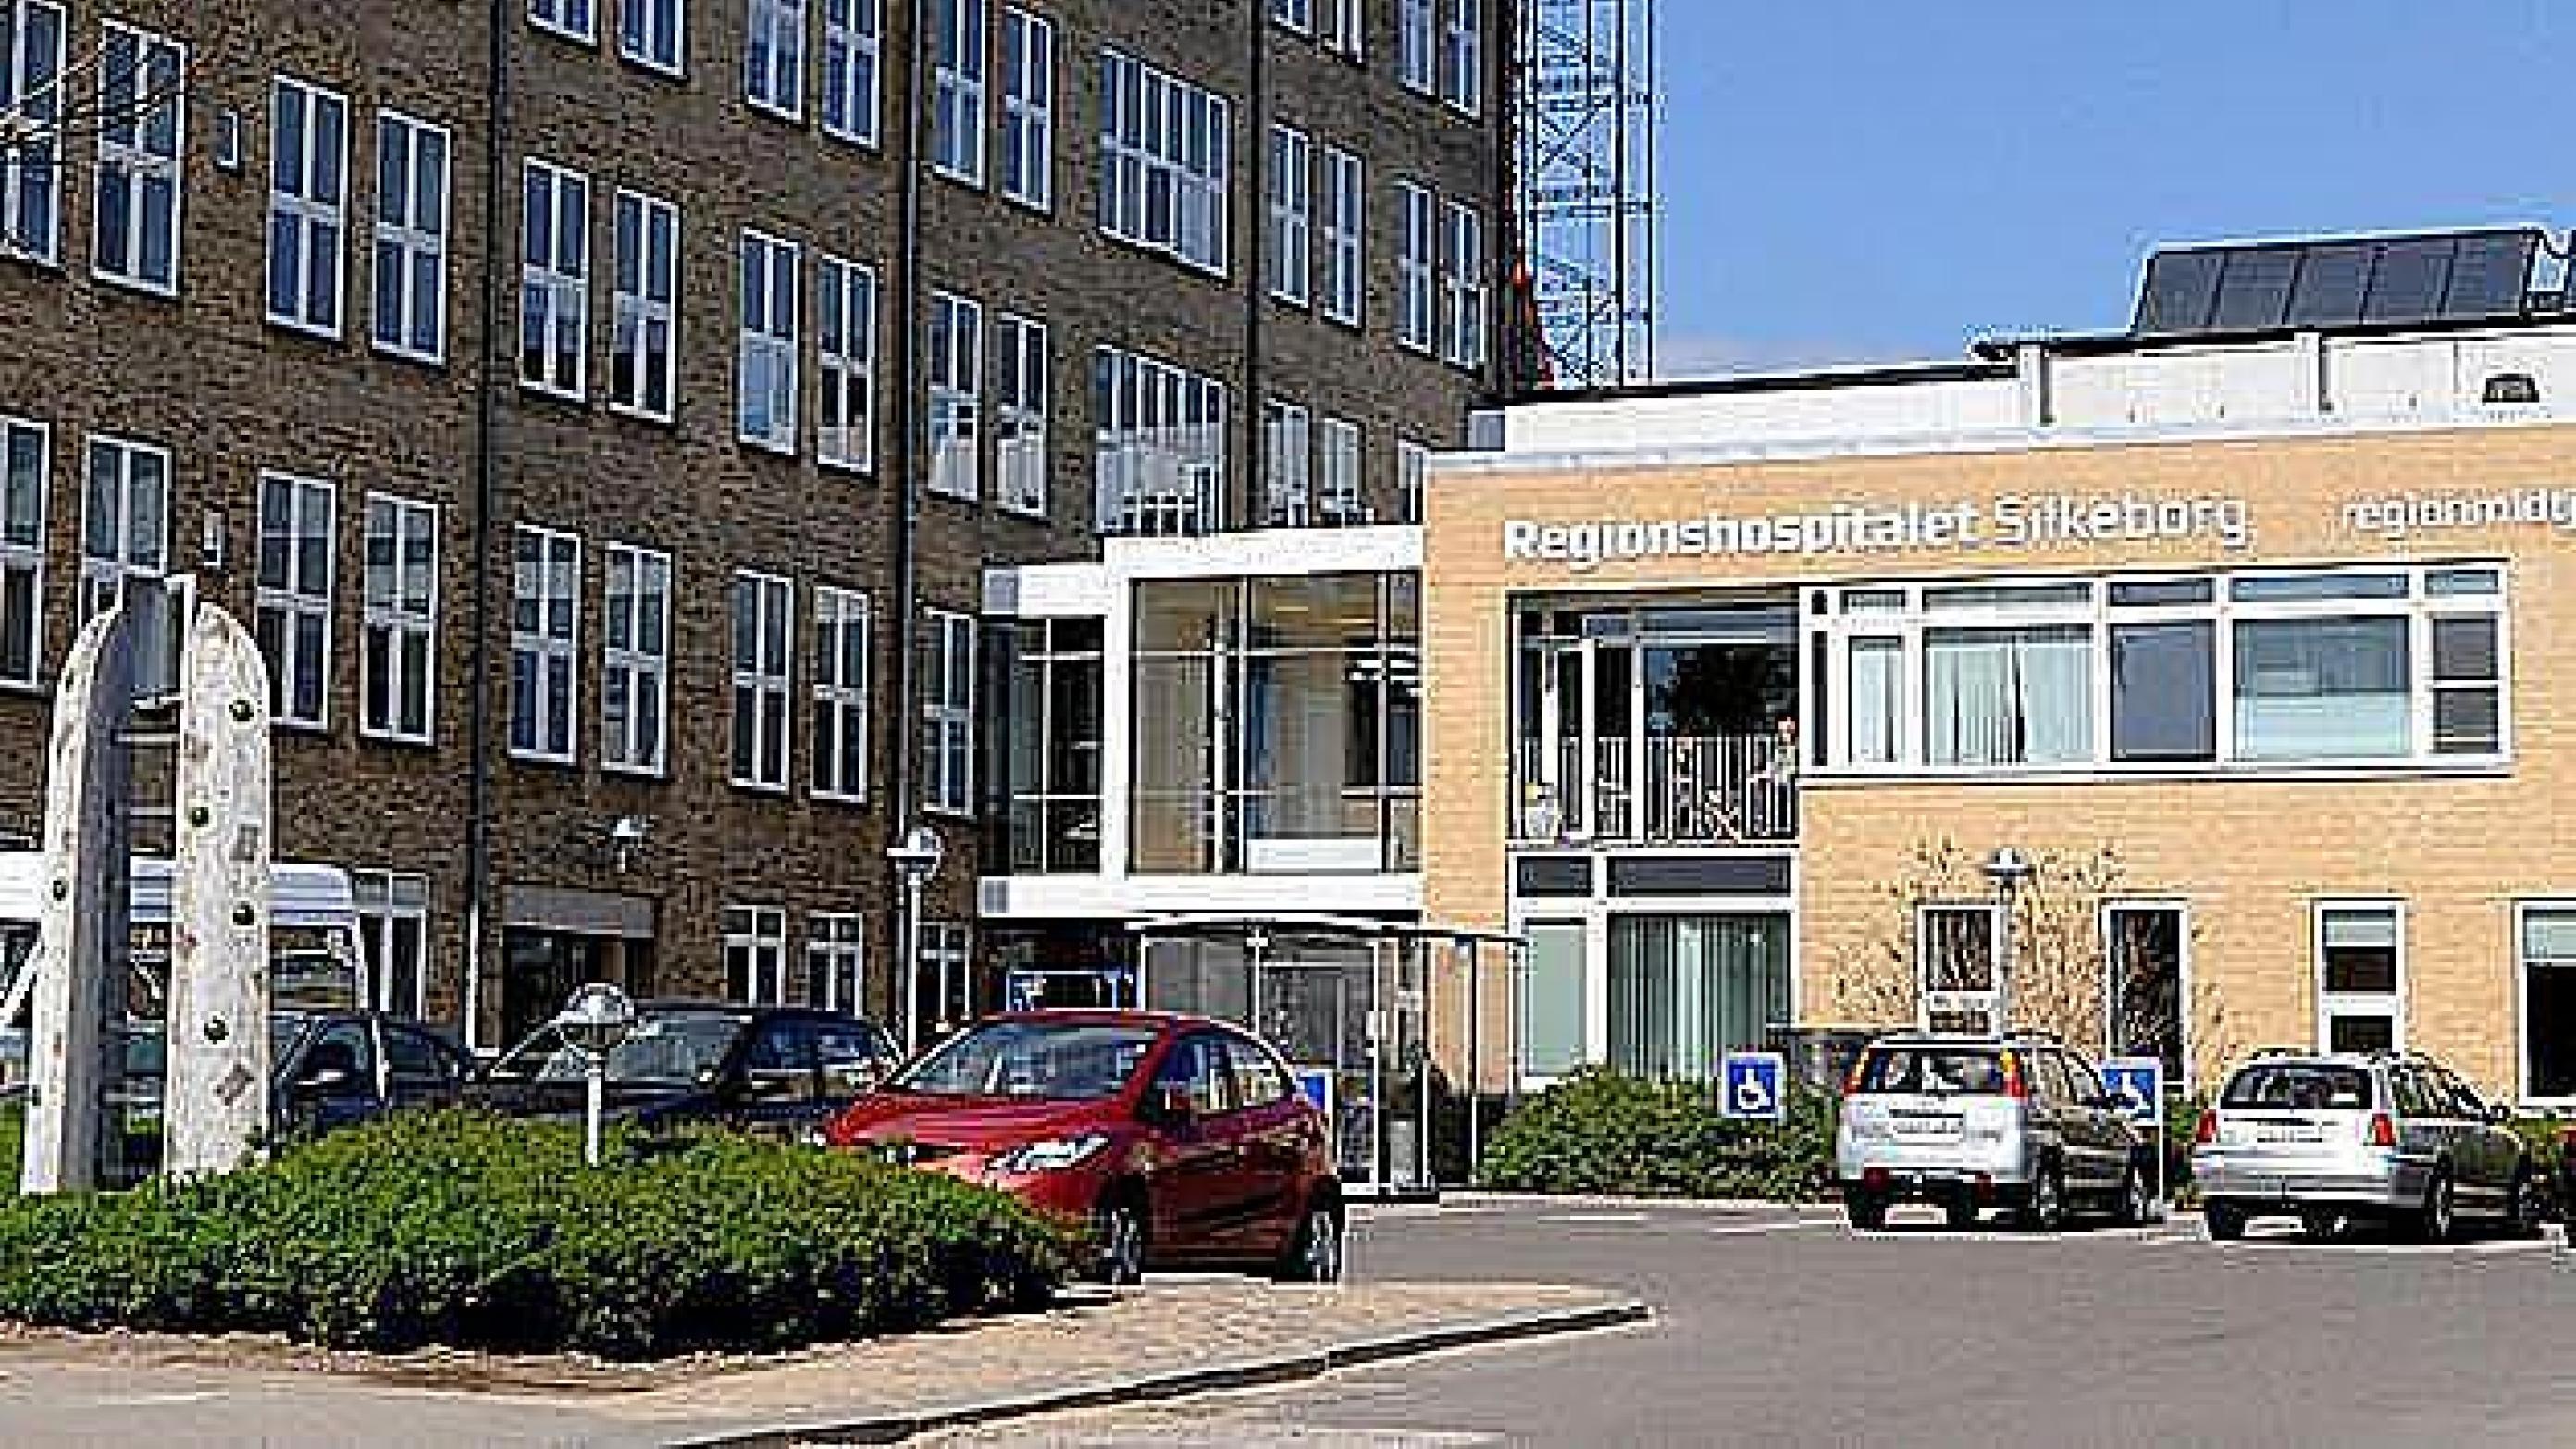 Regionshospitalet Silkeborg, som er en del af Hospitalsenhed Midt i Region Midtjylland.